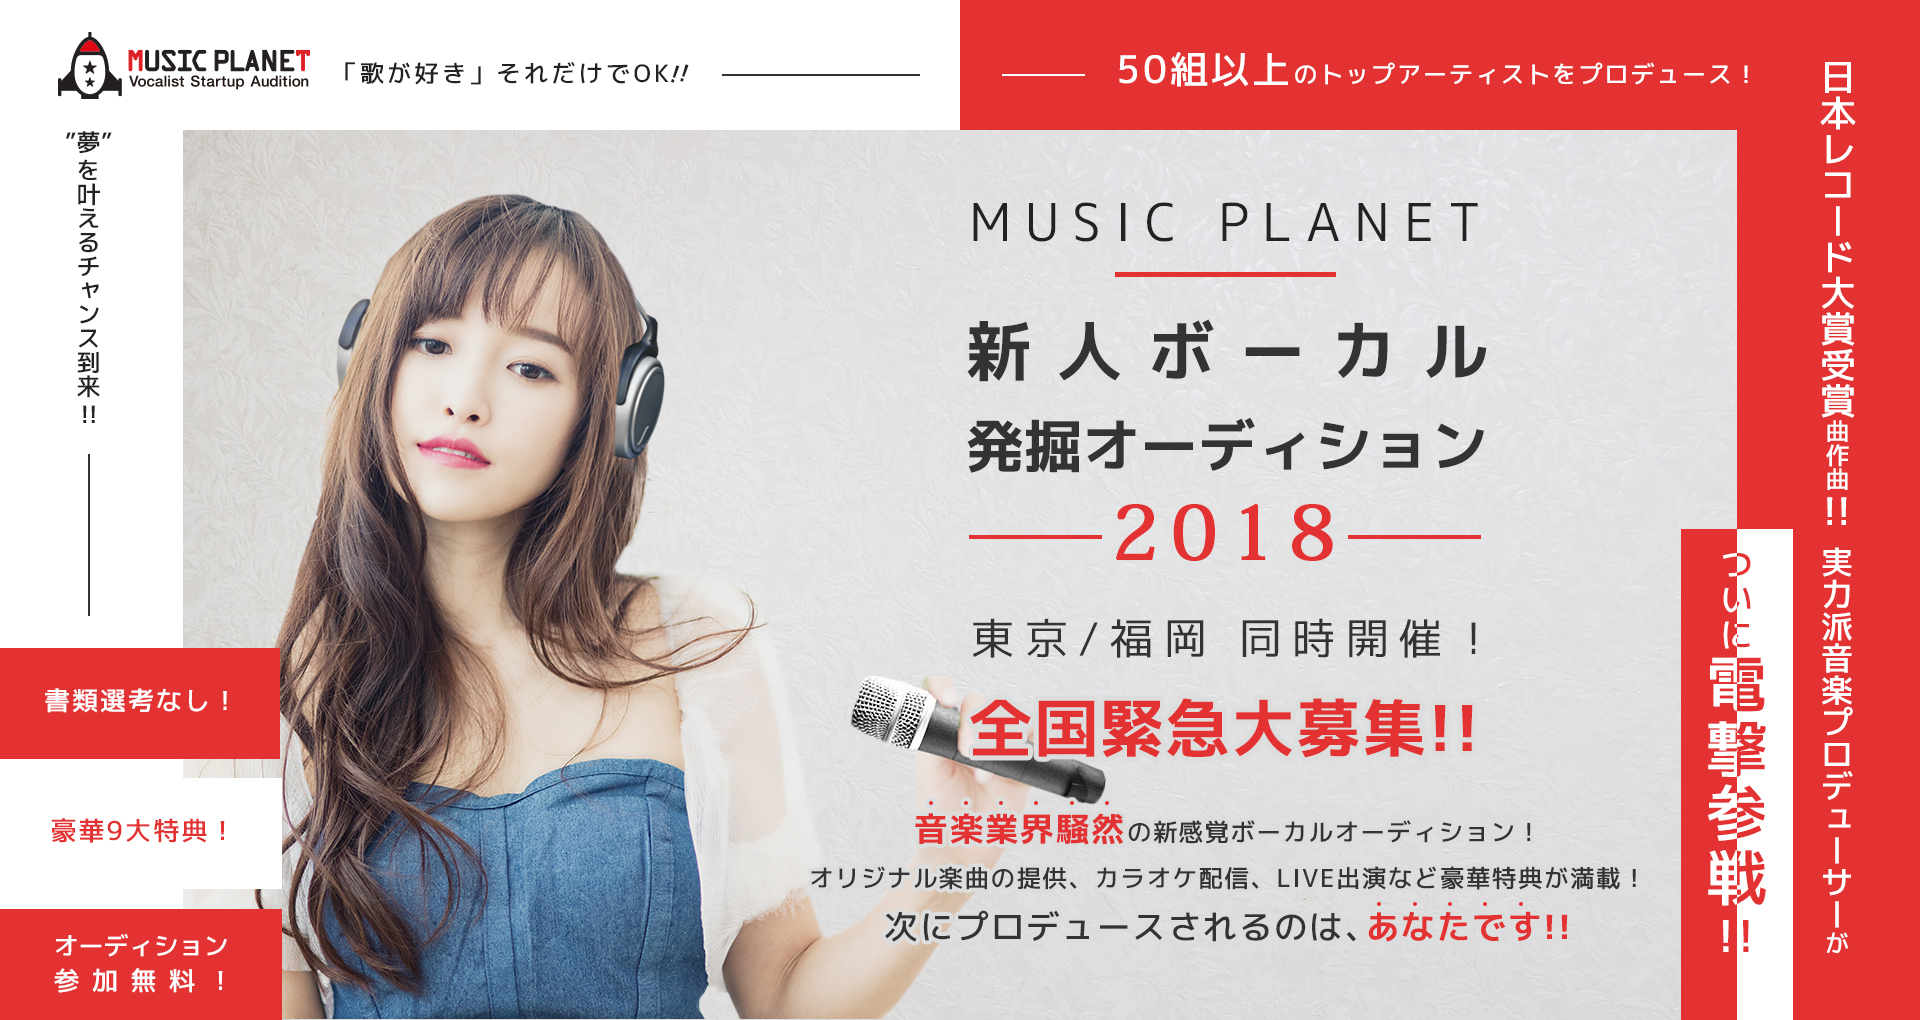 MUSIC PLANET 新人ボーカル発掘オーディション2018